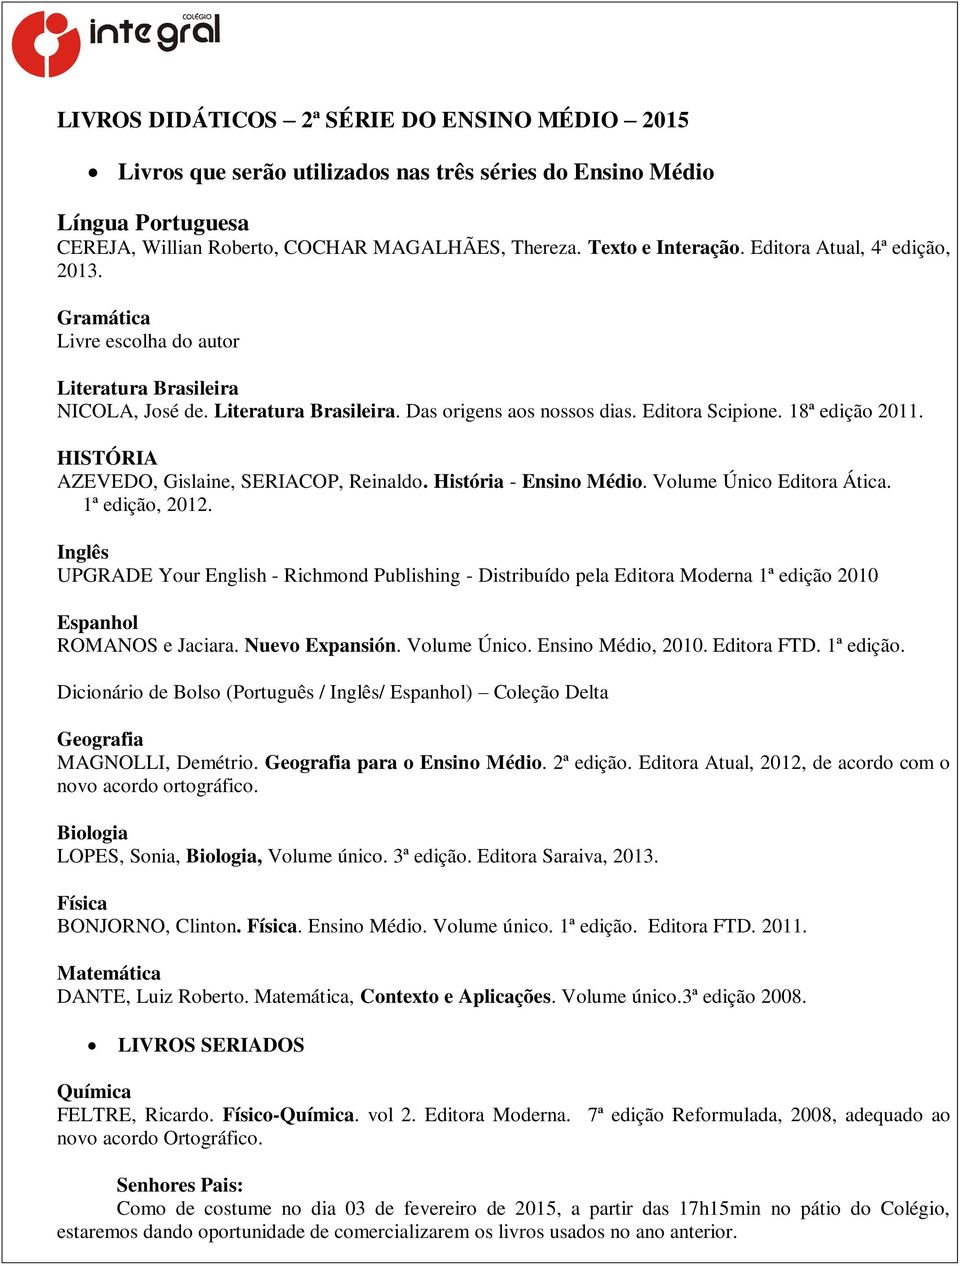 HISTÓRIA AZEVEDO, Gislaine, SERIACOP, Reinaldo. História - Ensino Médio. Volume Único Editora Ática. 1ª edição, 2012.